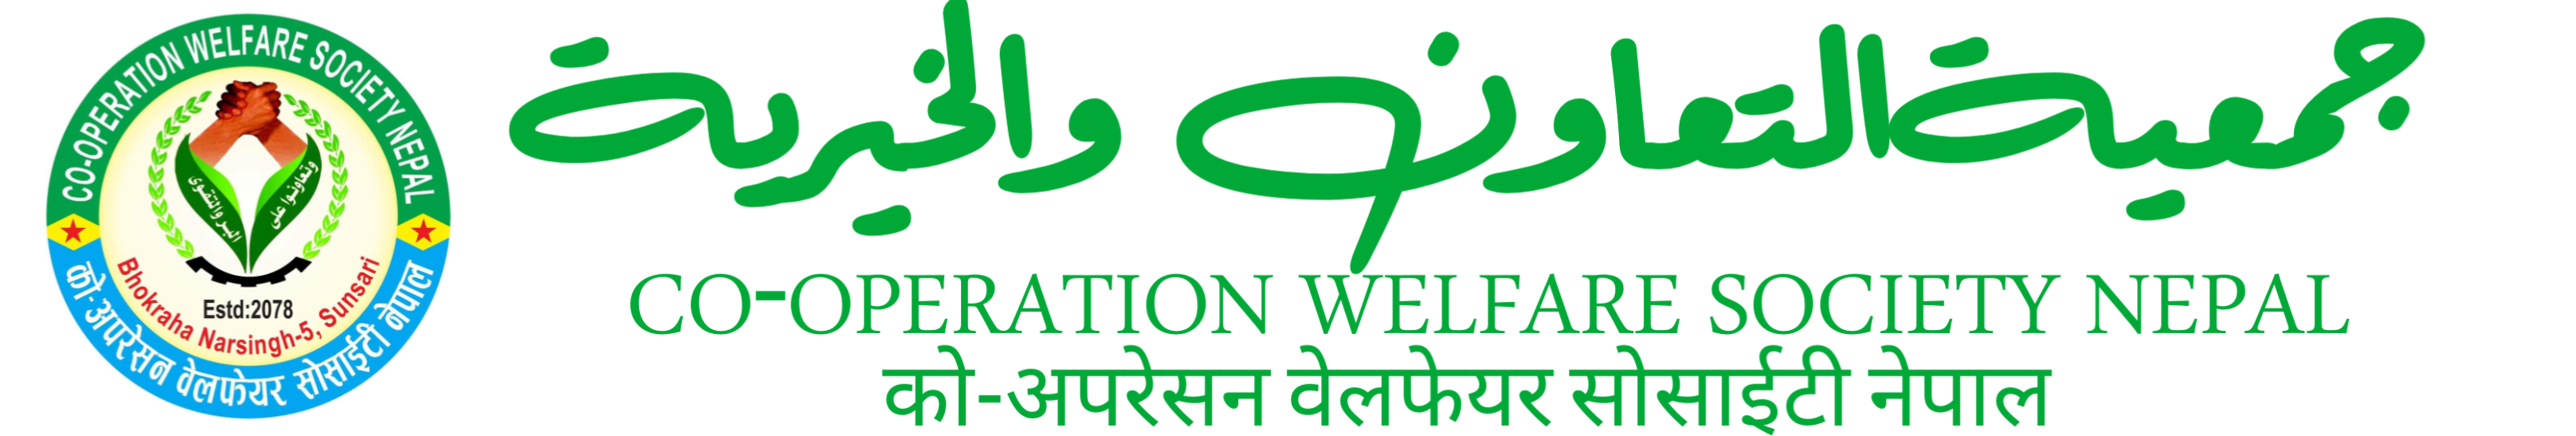 Co-Operation Welfare Society nepal